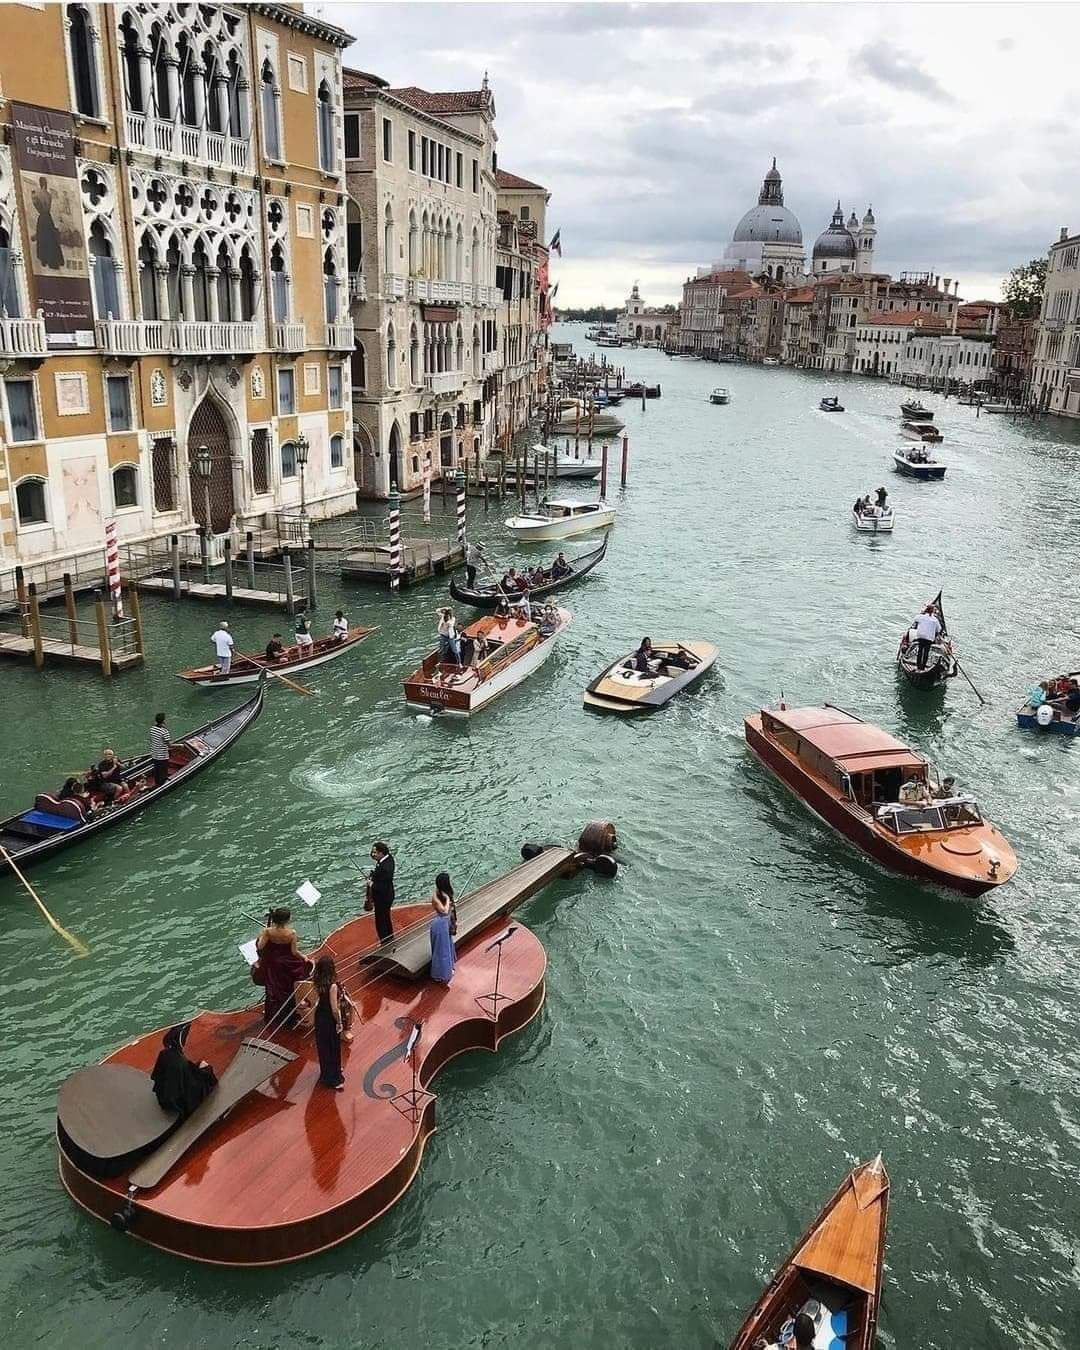 Una de las más expresivas fotografías, de uno de los puntos turísticos más concurrido del mundo, Venecia, Italia